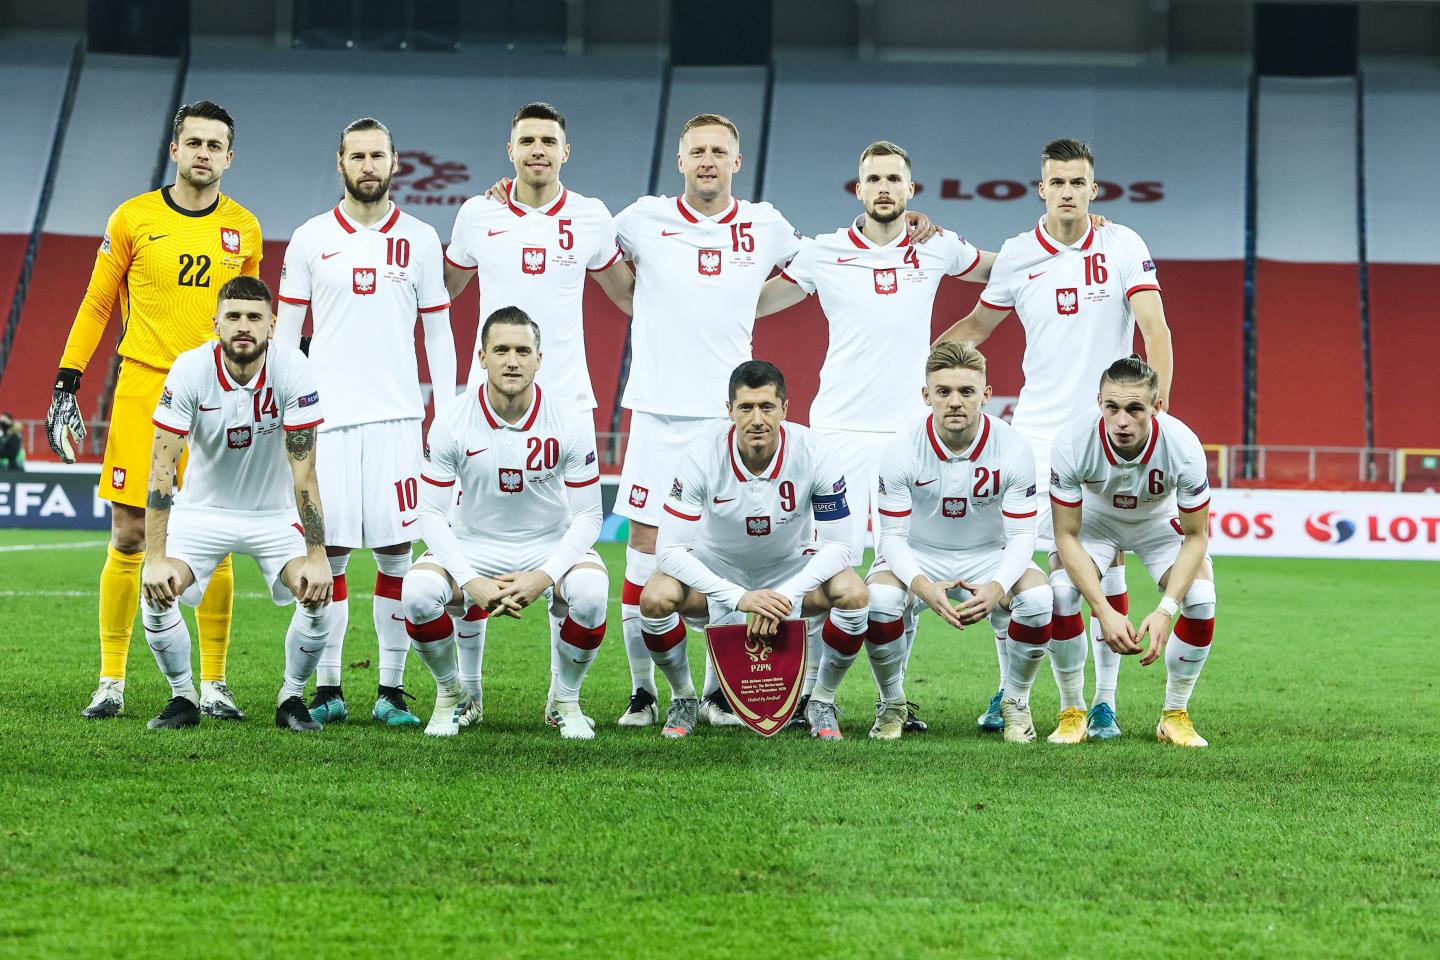 Grupowe zdjęcie reprezentacji Polski przed meczem z Holandią w Lidze Narodów. 18.11.2020.